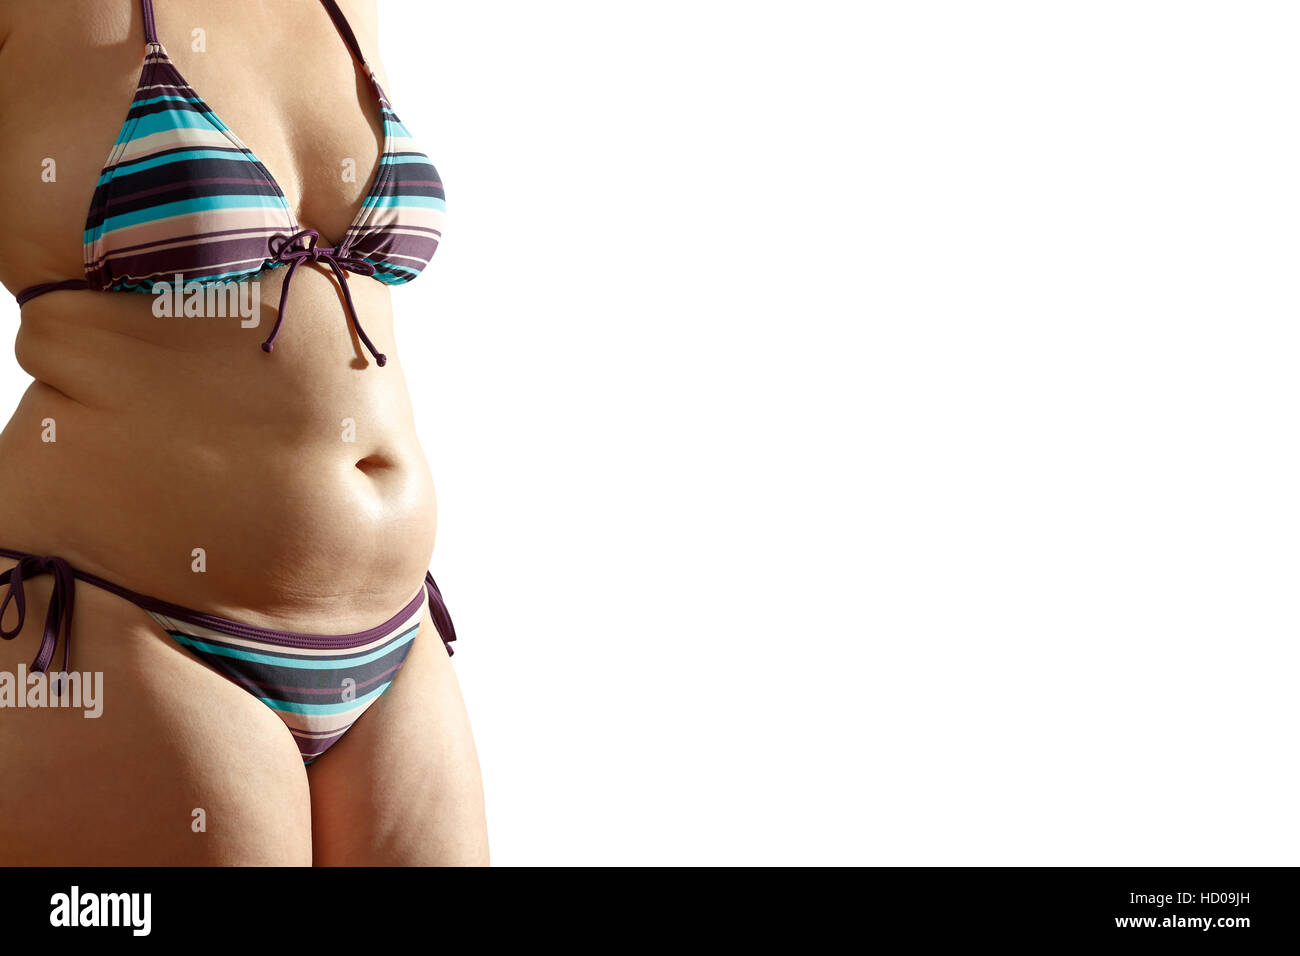 Corps de femme en bikini avec de la graisse excessive sur la taille et l'estomac, isolé, fond blanc, texte ou copy space Banque D'Images